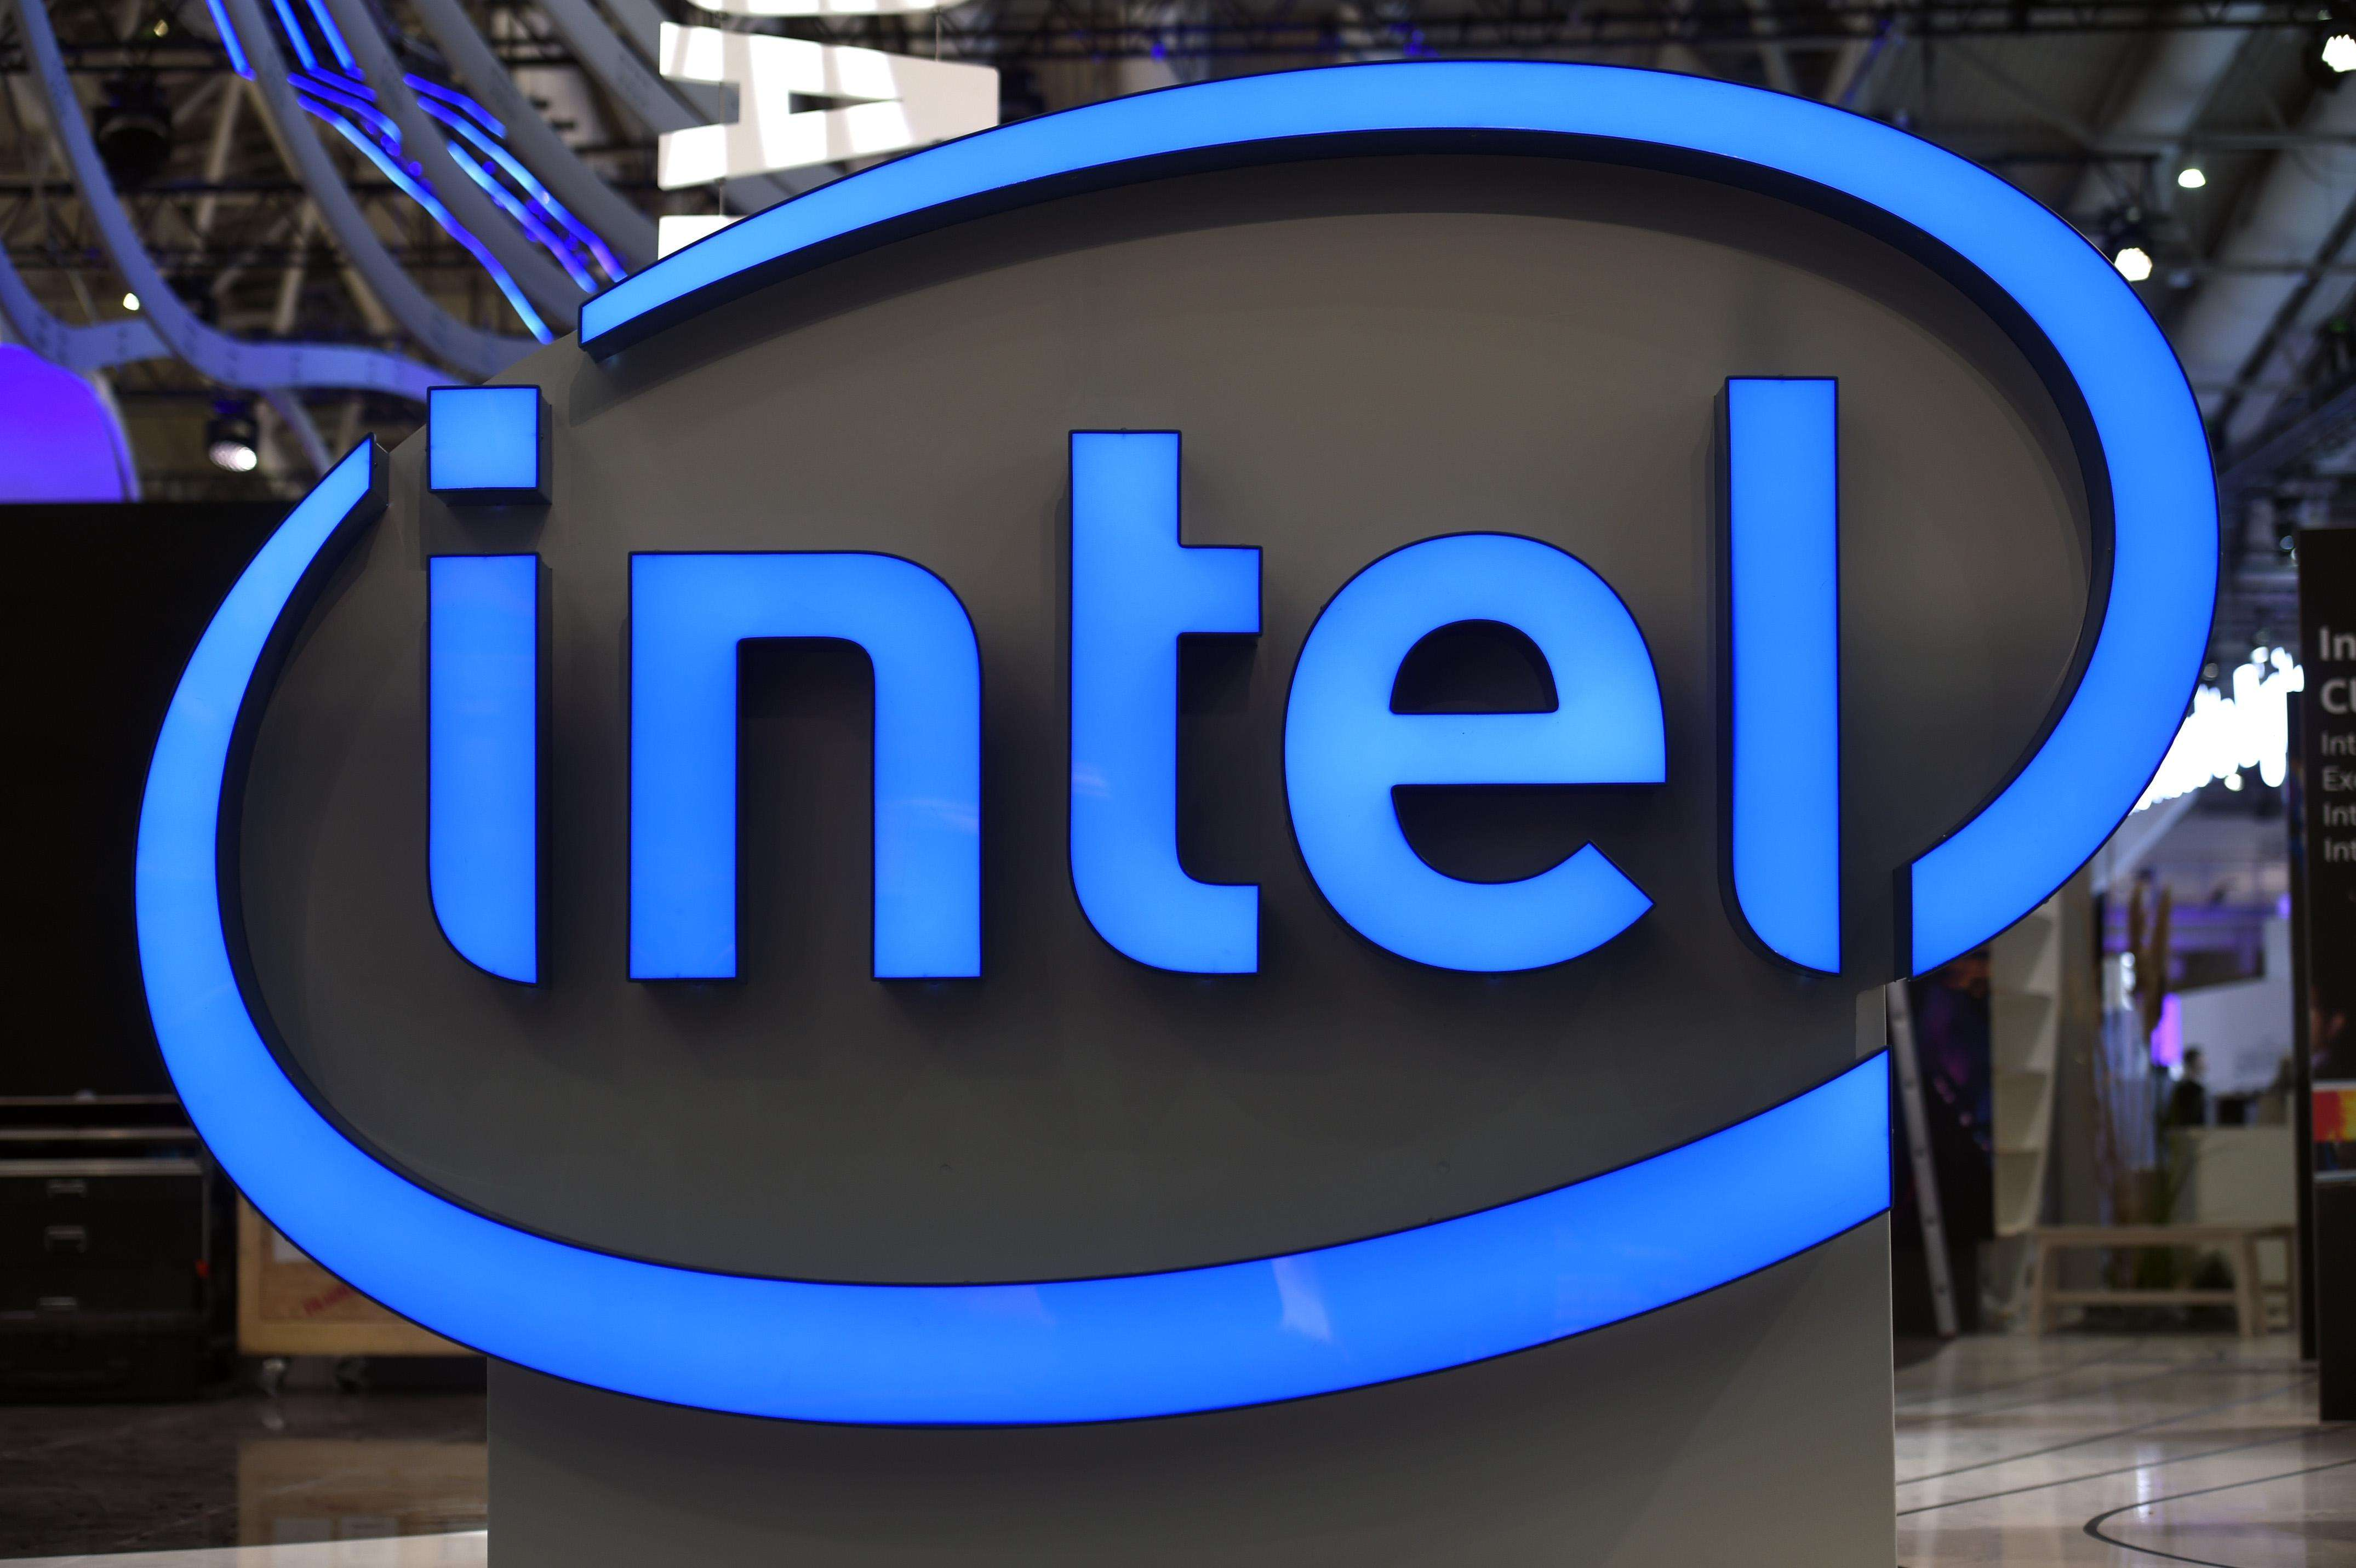 Vairāki globālie milži apvieno spēkus!Intel sadarbojas ar vairākiem uzņēmumiem, lai ieviestu savu 5G privātā tīkla risinājumu